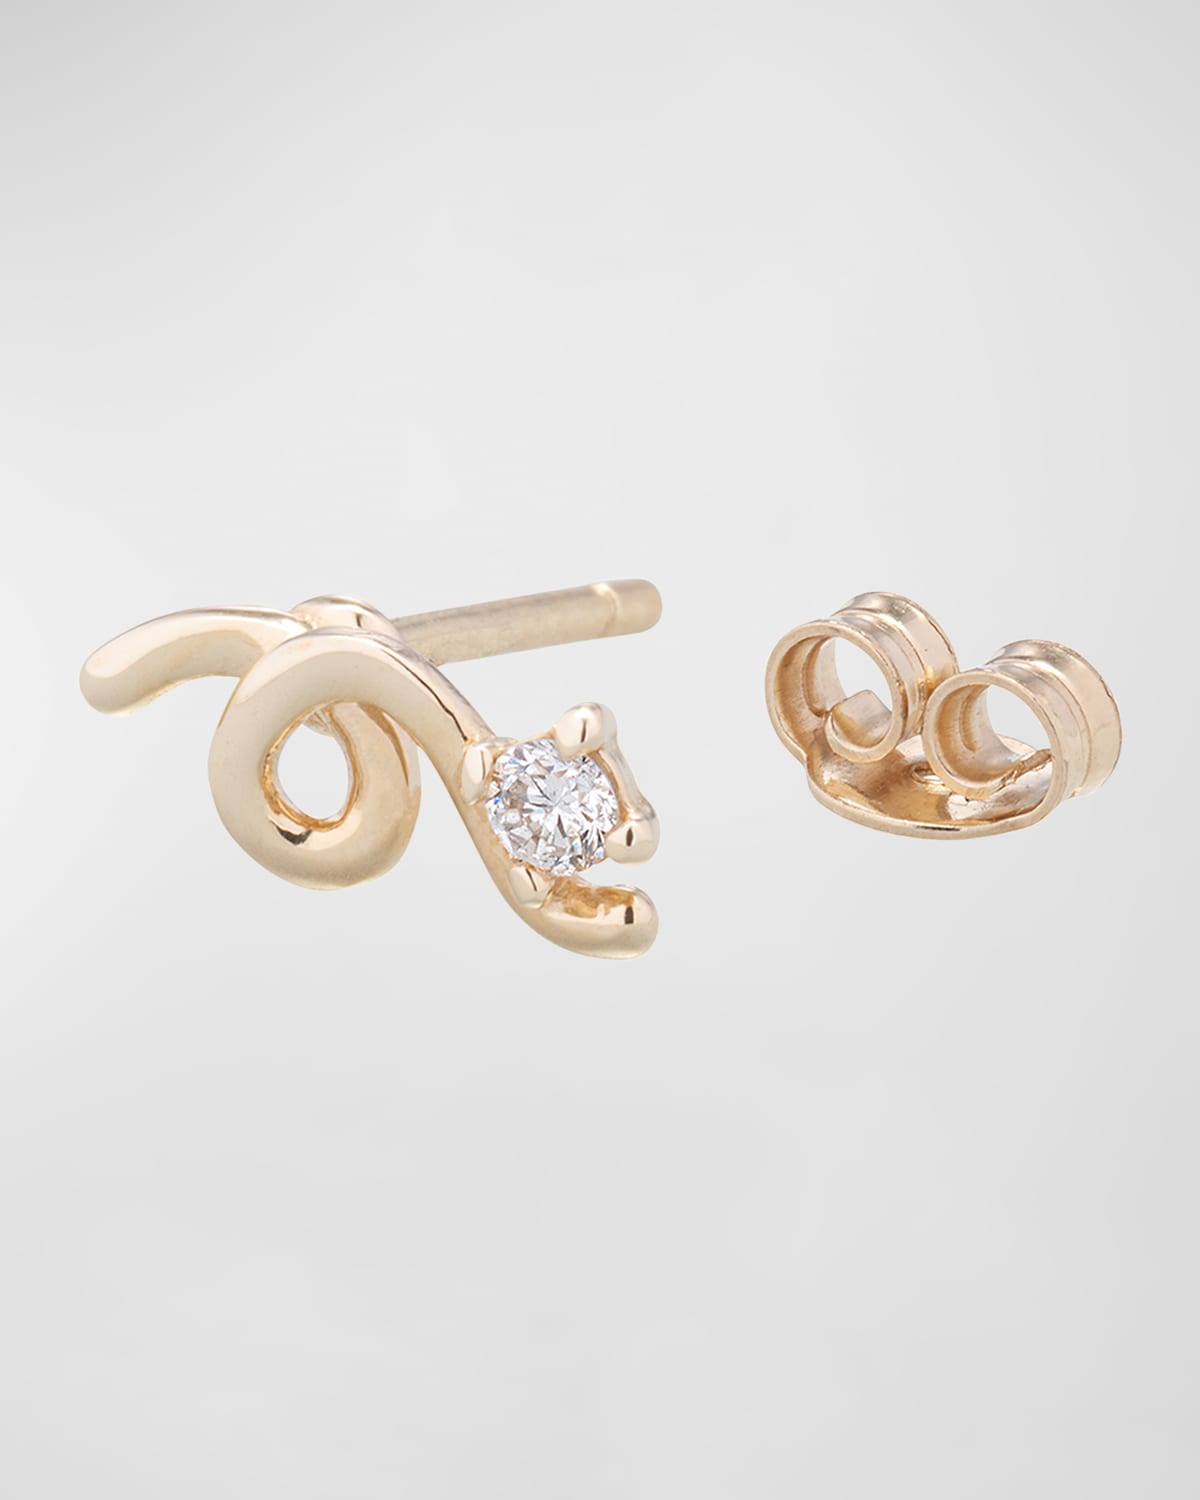 Mini Loop Earring in 9K Yellow Gold with Diamonds, Single